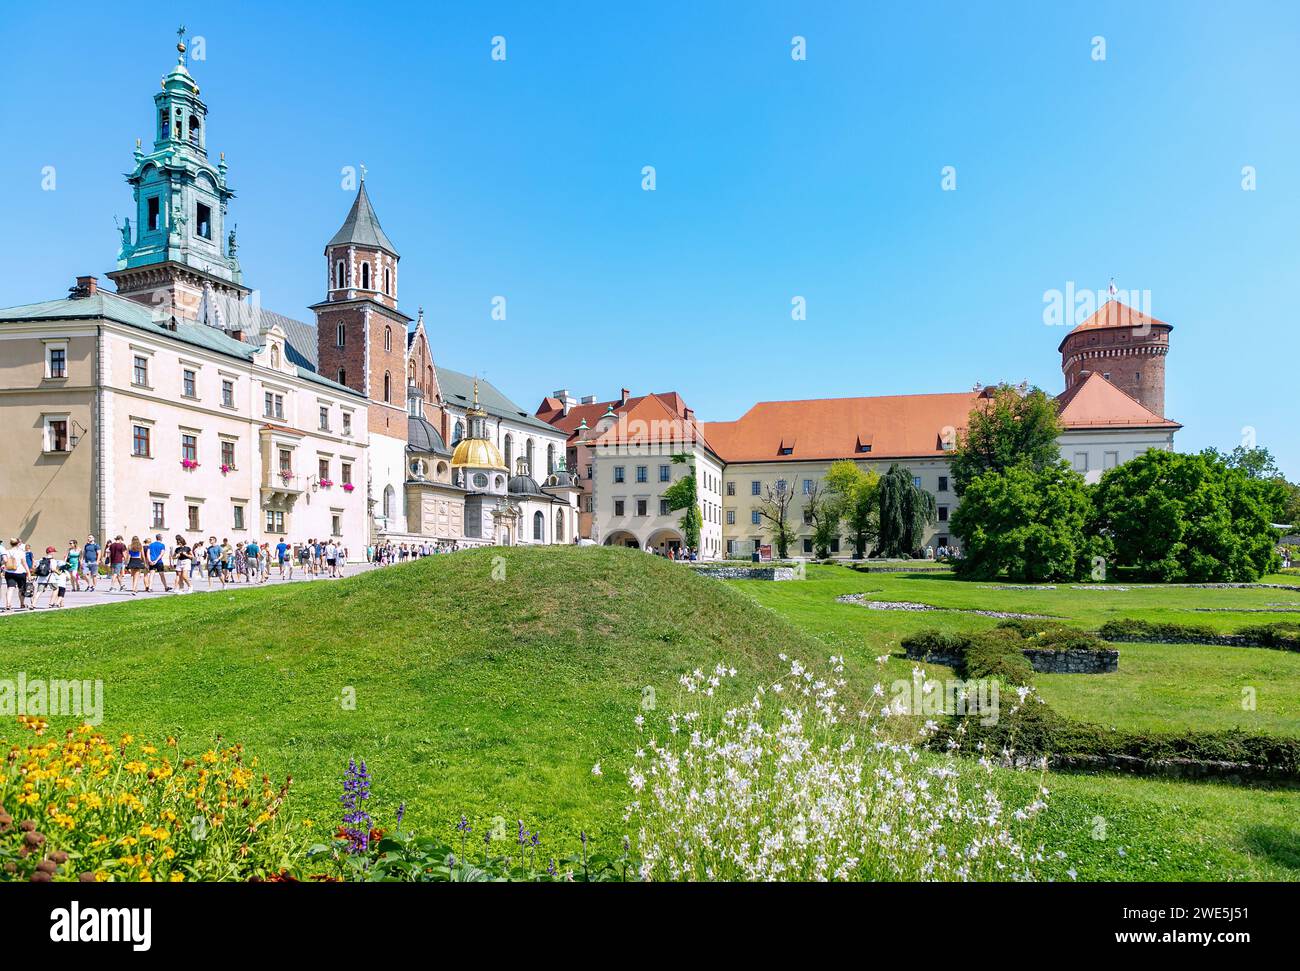 Wawel Plateau (Wzgórze Wawelskie) with cathedral and royal castle (Zamek Królewski) in the old town of Kraków in Poland Stock Photo